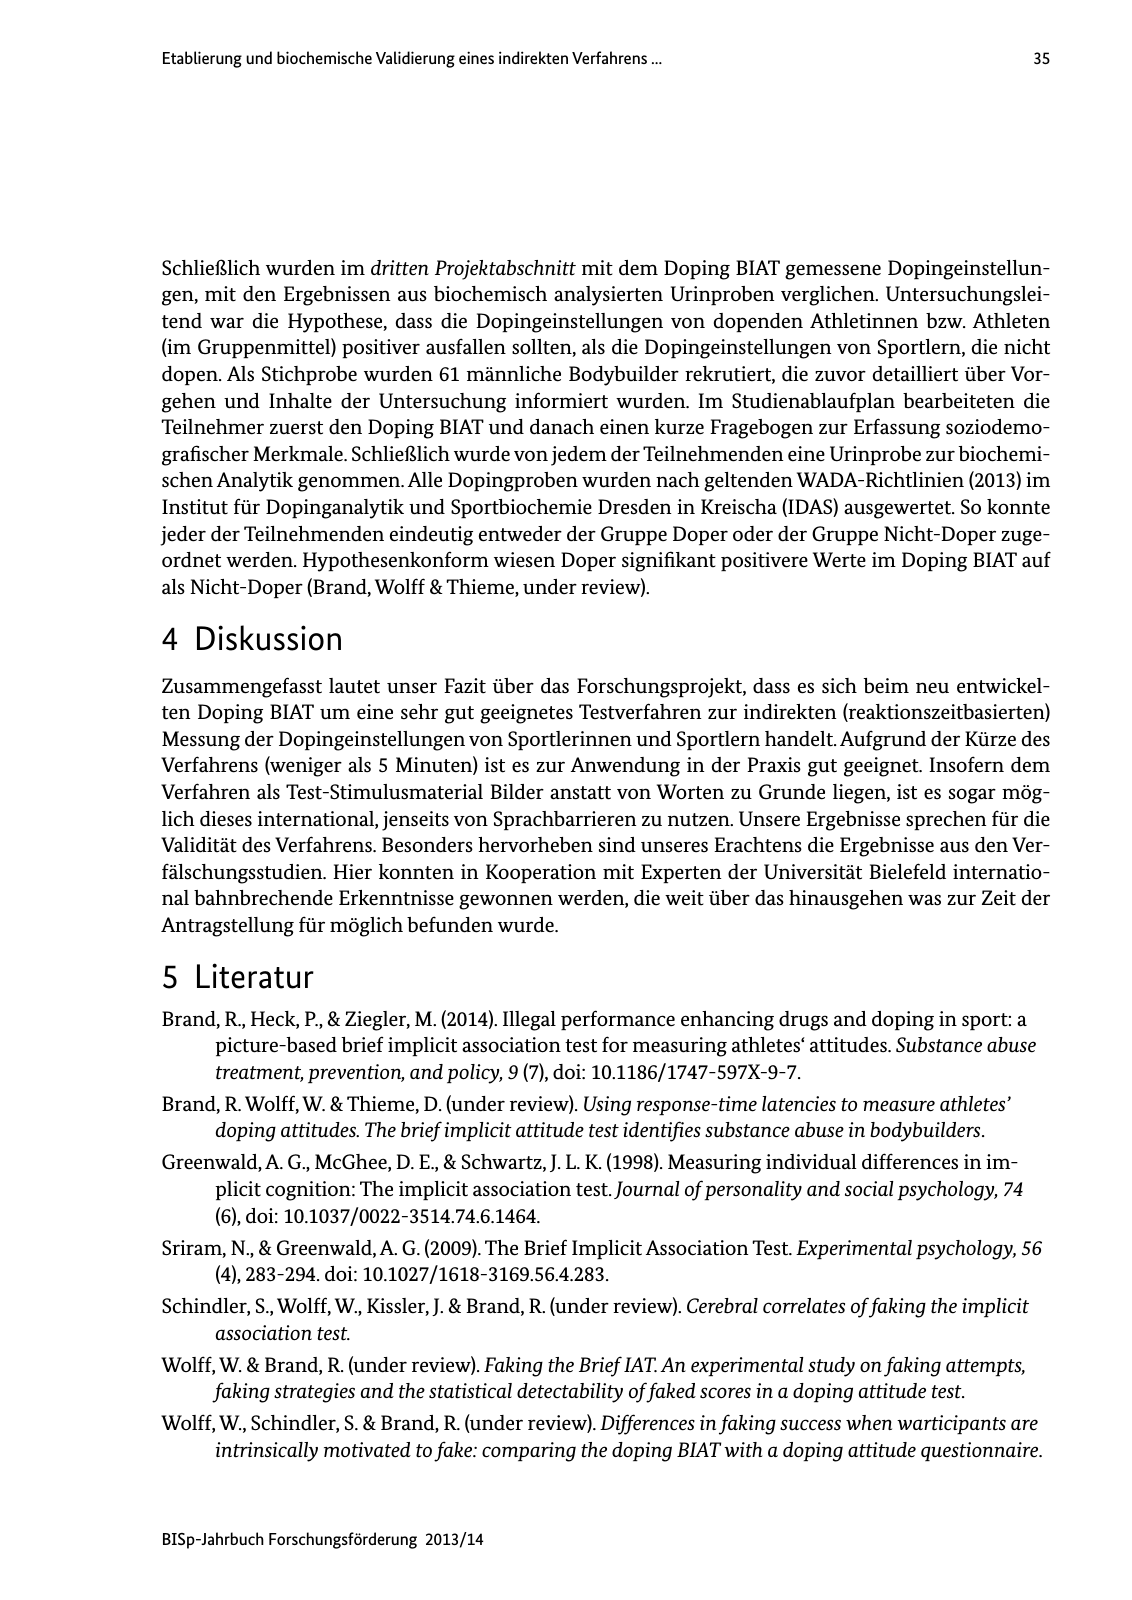 Vorschau BISp-Jahrbuch Forschungsförderung 2013/14 Seite 36